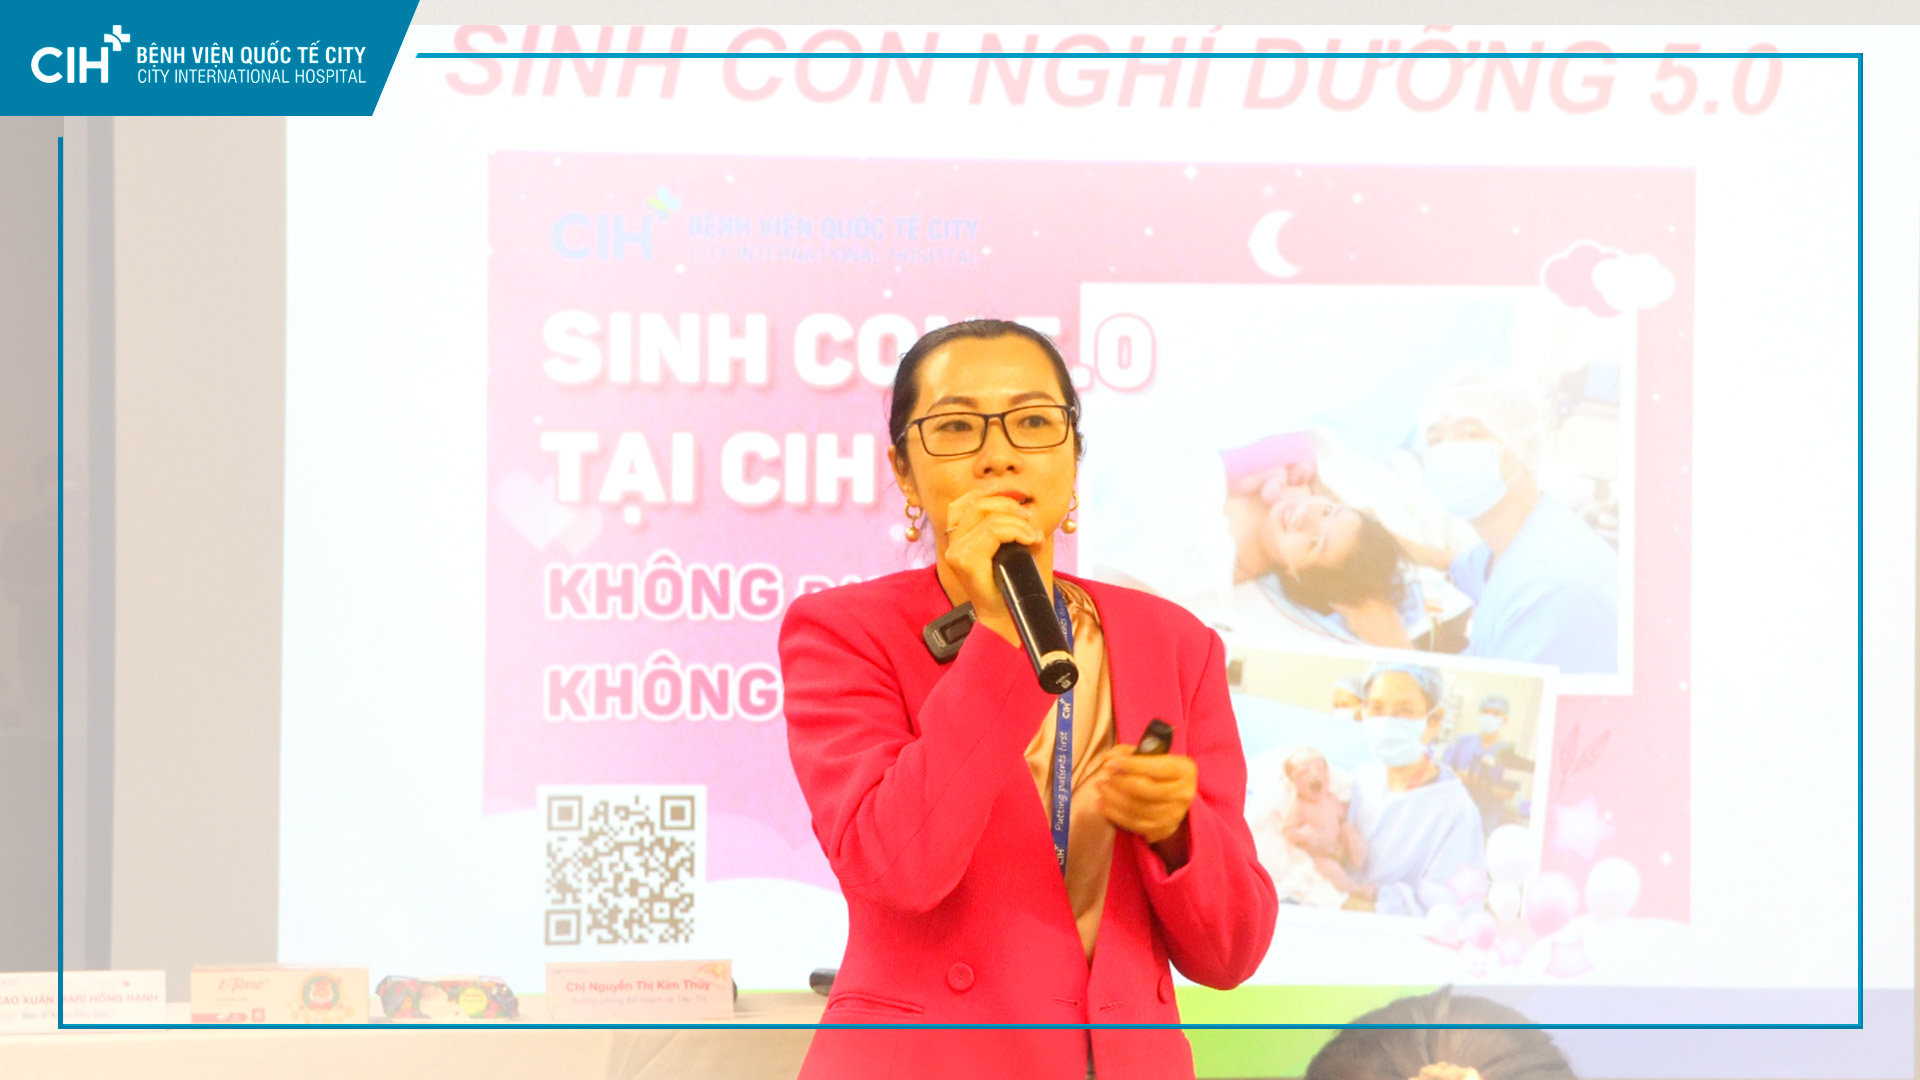 Hội thảo “Xuất Huyết Âm Đạo Trong Thai Kỳ” thành công với 50 mẹ bầu và gia đình tham dự